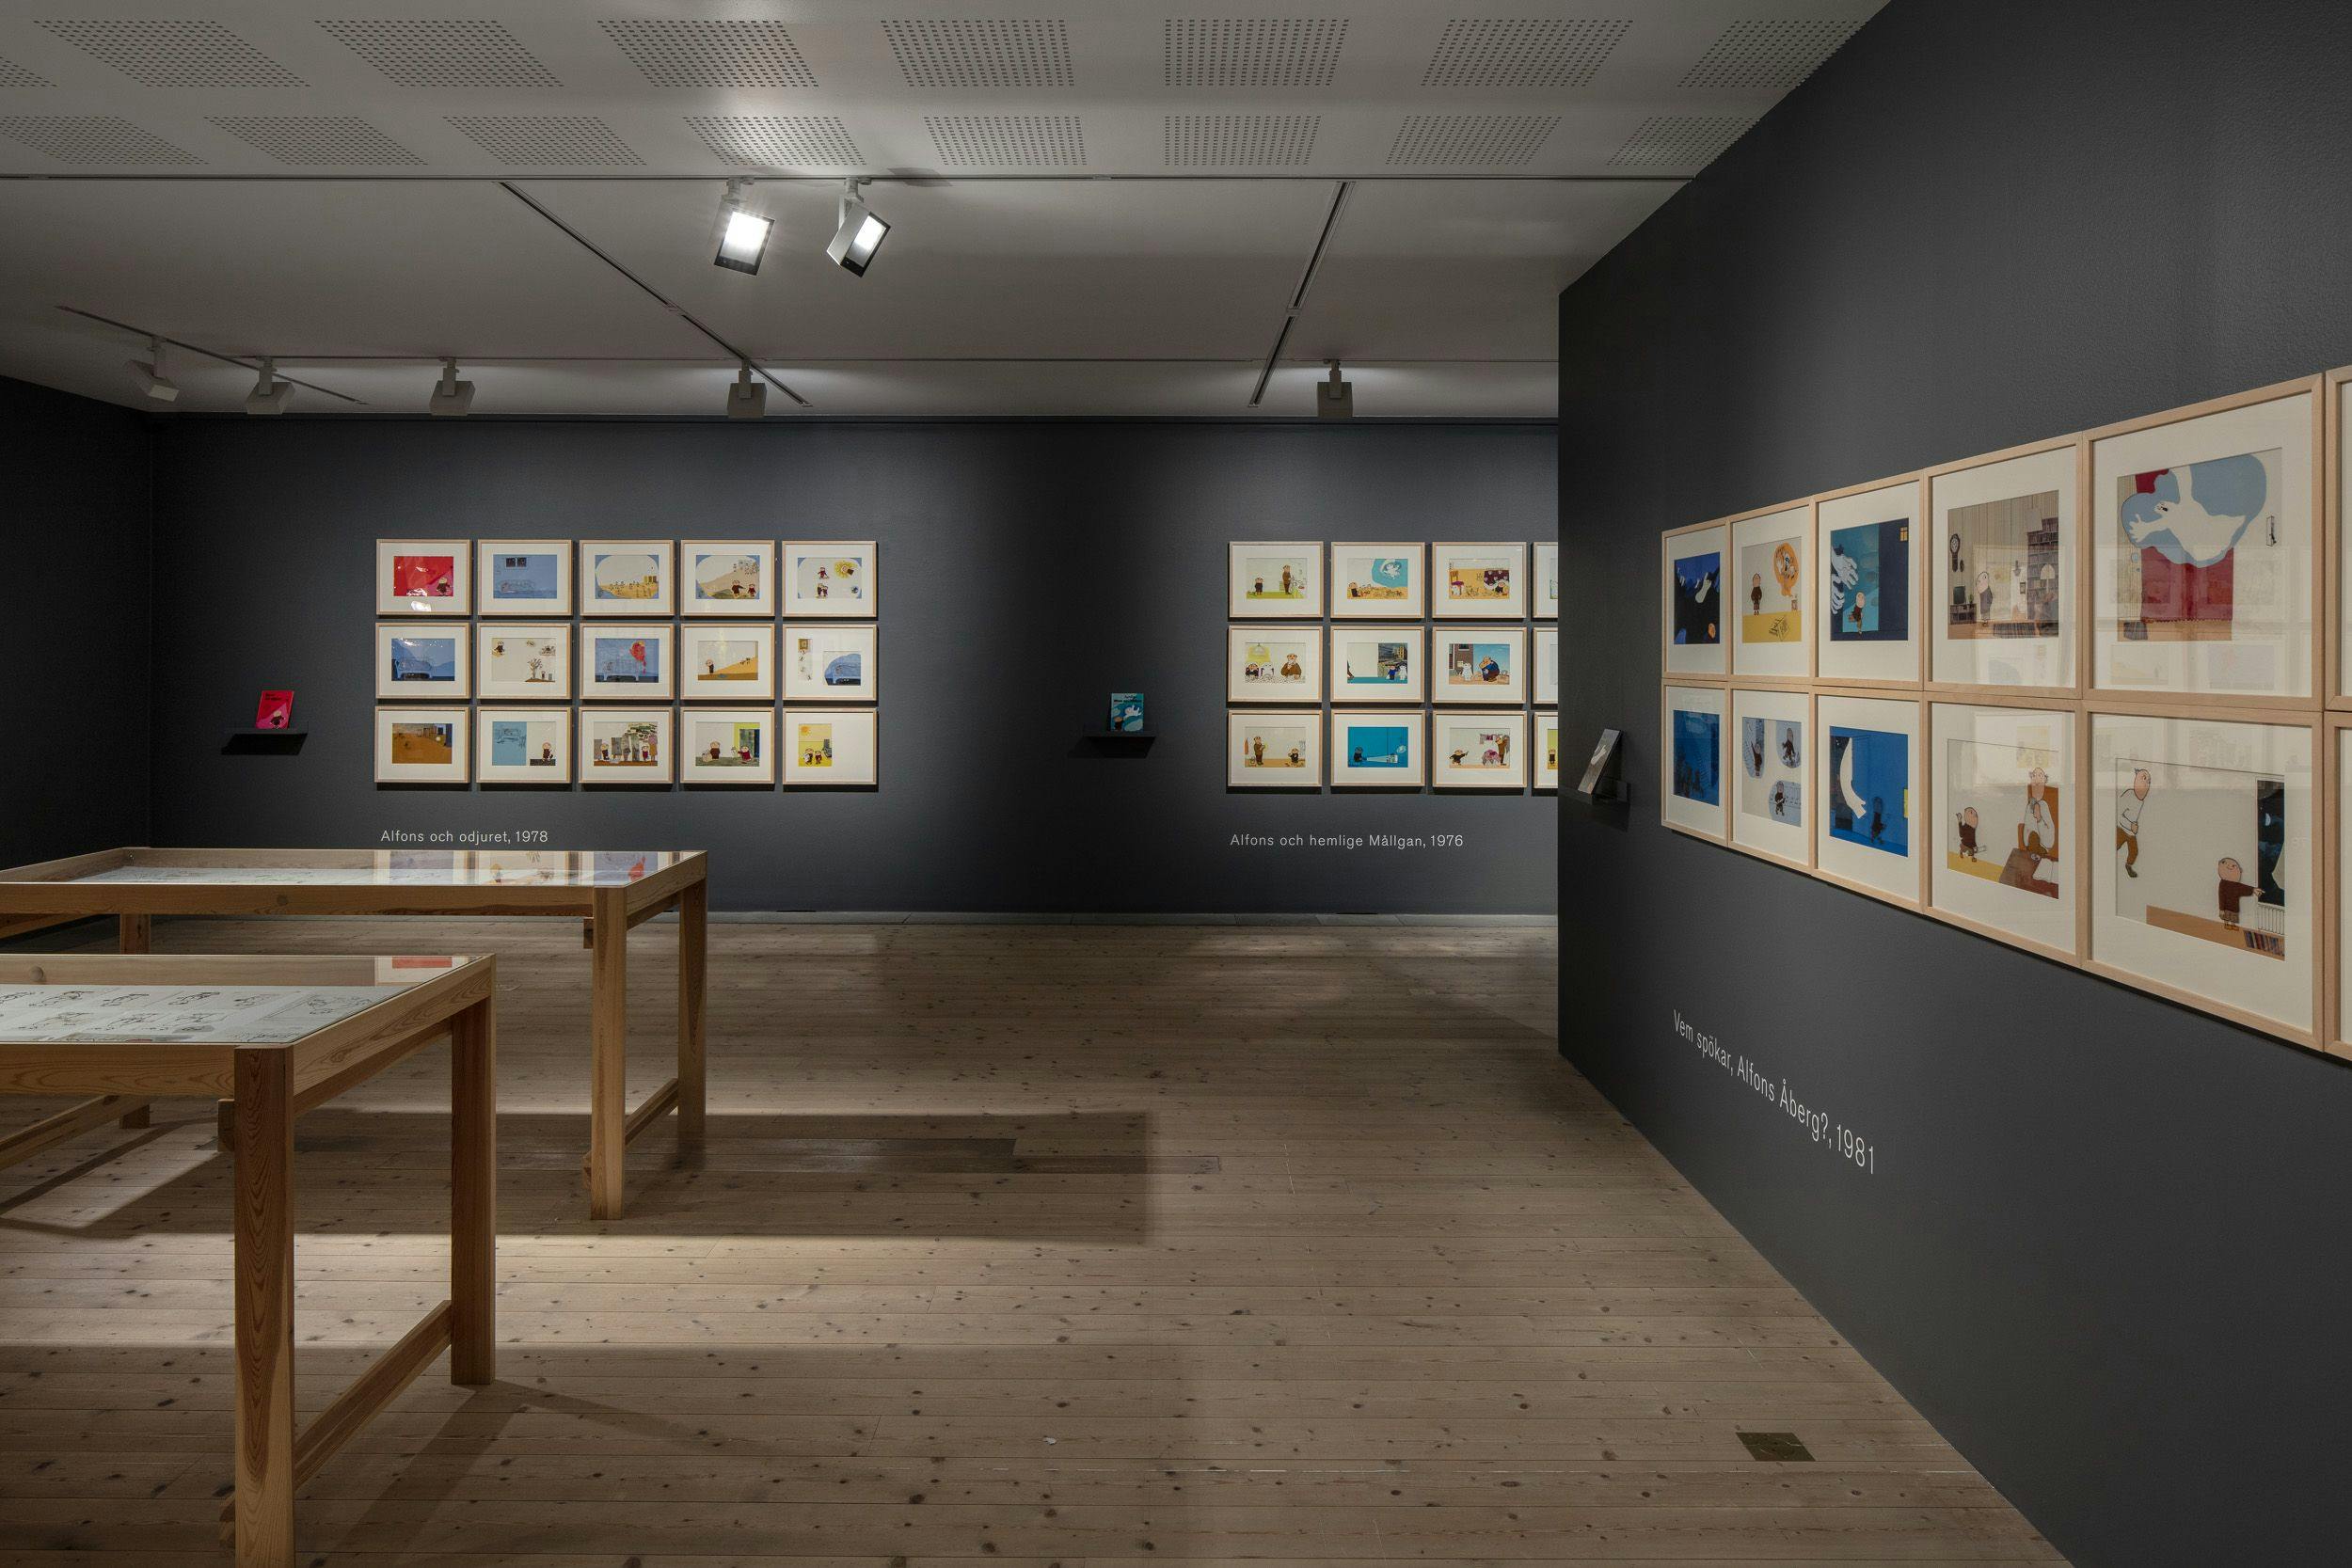 Bild av ett rum med bilder från Alfons Åberg på väggar och i monter